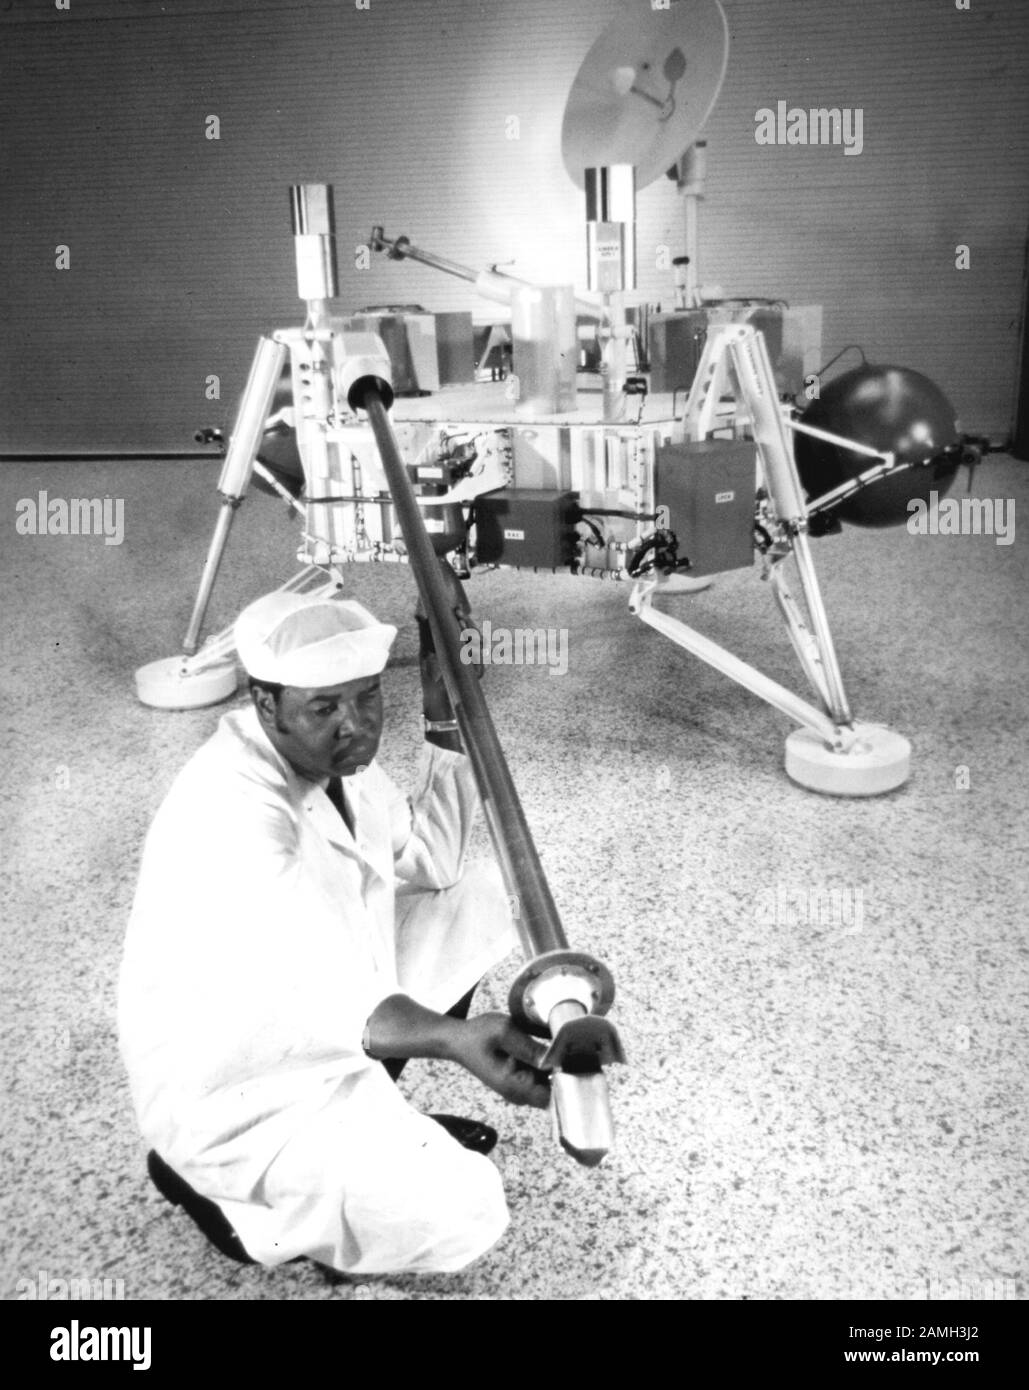 Il tecnico controlla il campione di suolo del calunnia vichingo, con il braccio robotico utilizzato per raccogliere un campione del suolo marziano, presso il Langley Research Center, Hampton, Virginia, Stati Uniti, 20 maggio 1971. Immagine gentilmente concessa dalla NASA. () Foto Stock